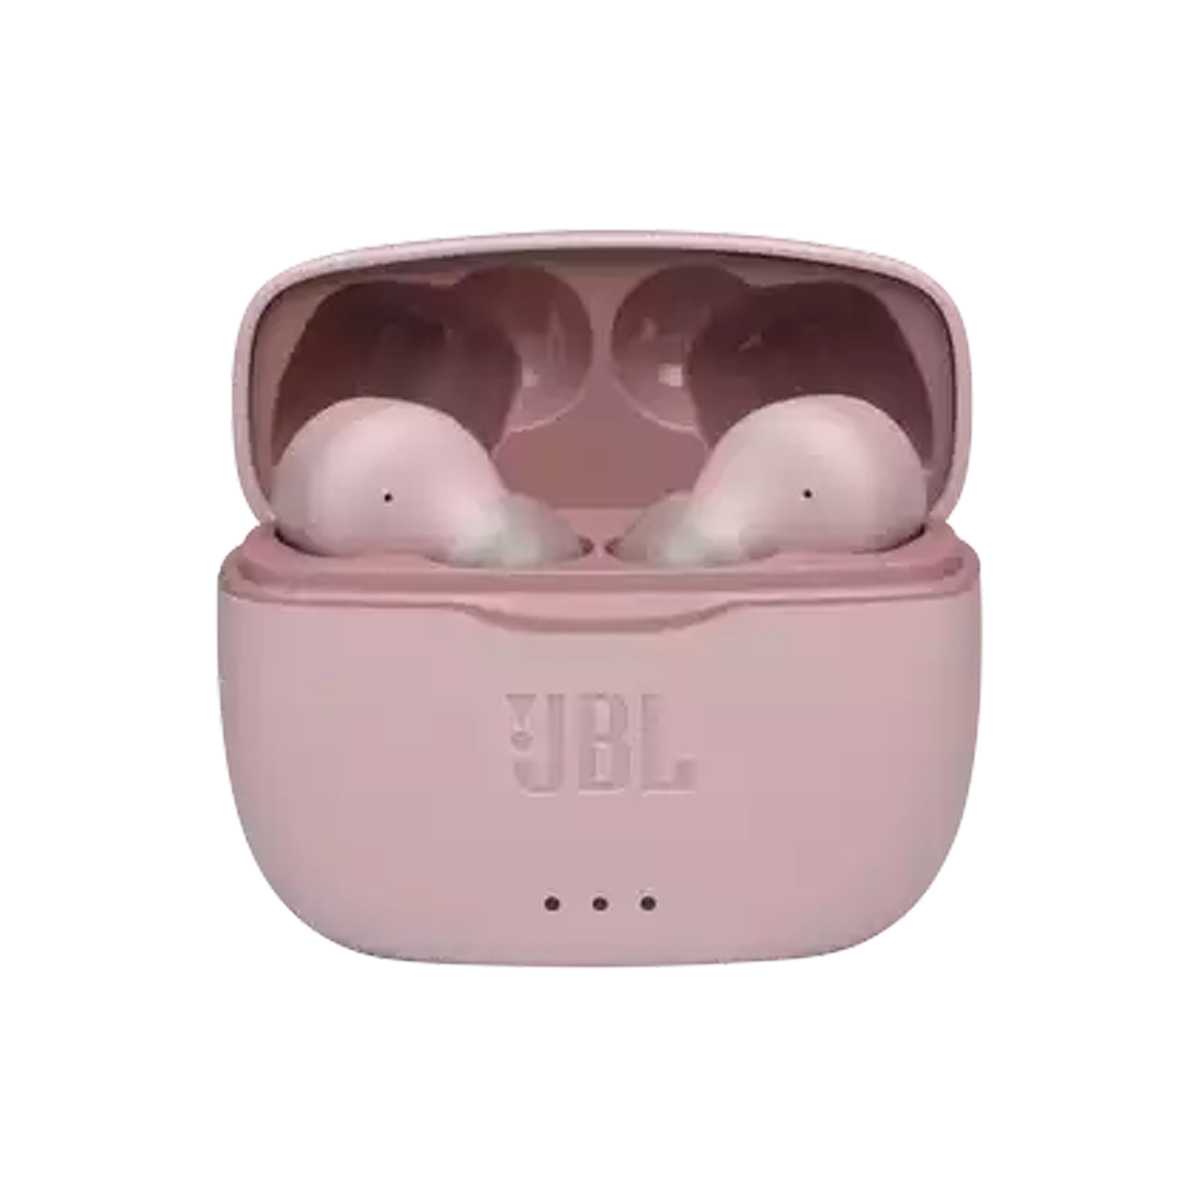 JBL True wireless earbud headphones JBLT215TWS Pink